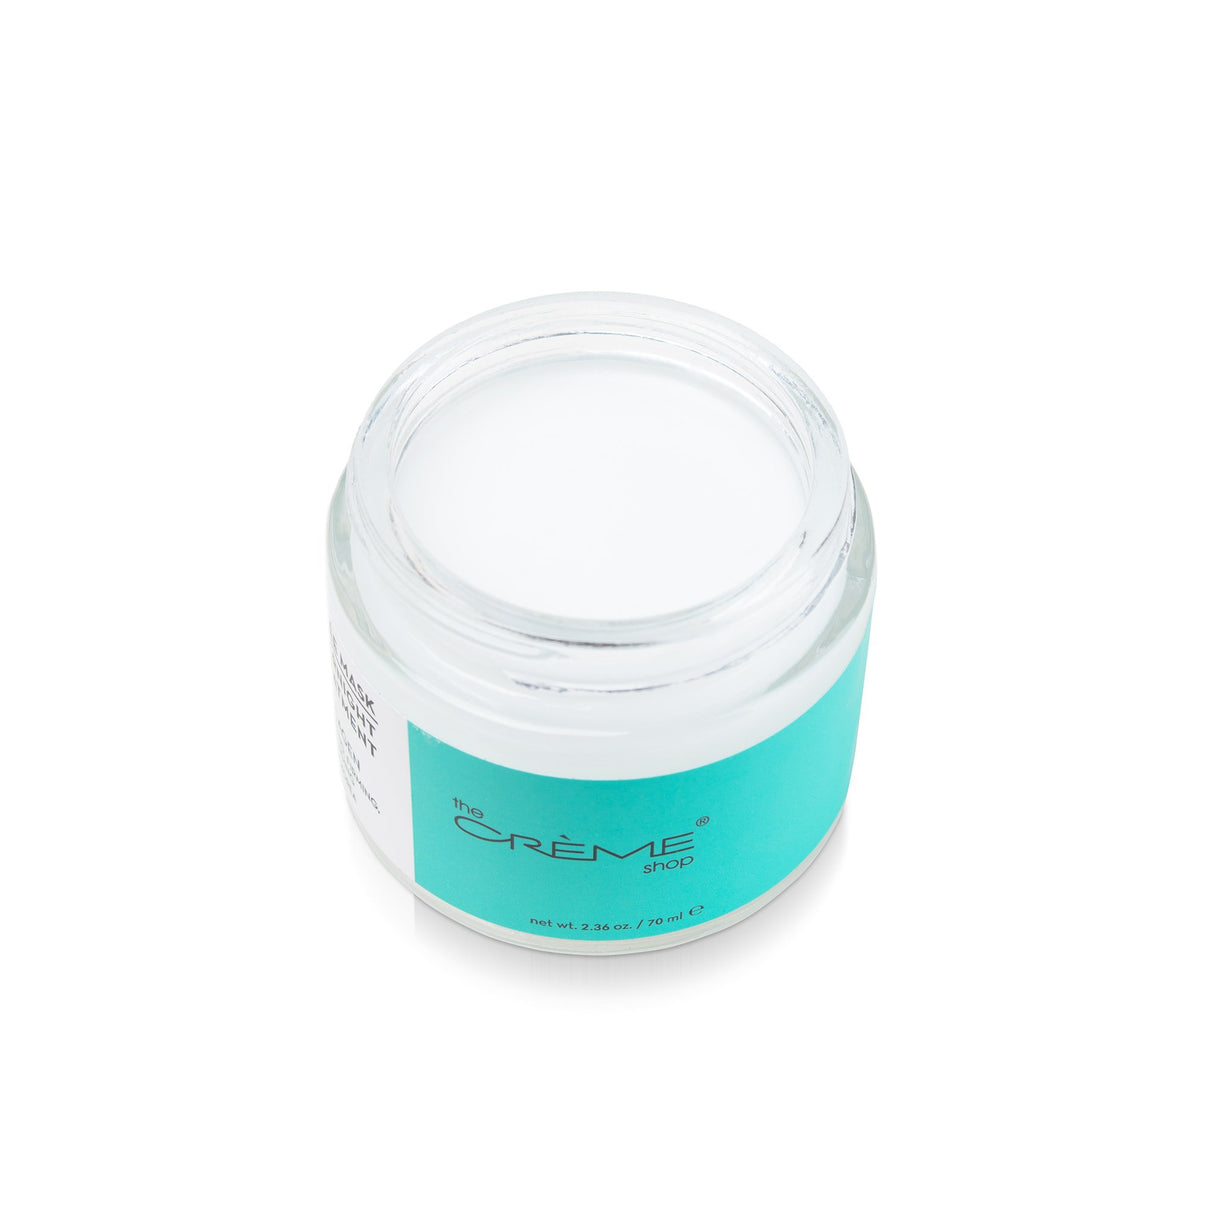 Collagen Gelée Mask Overnight Treatment – The Crème Shop